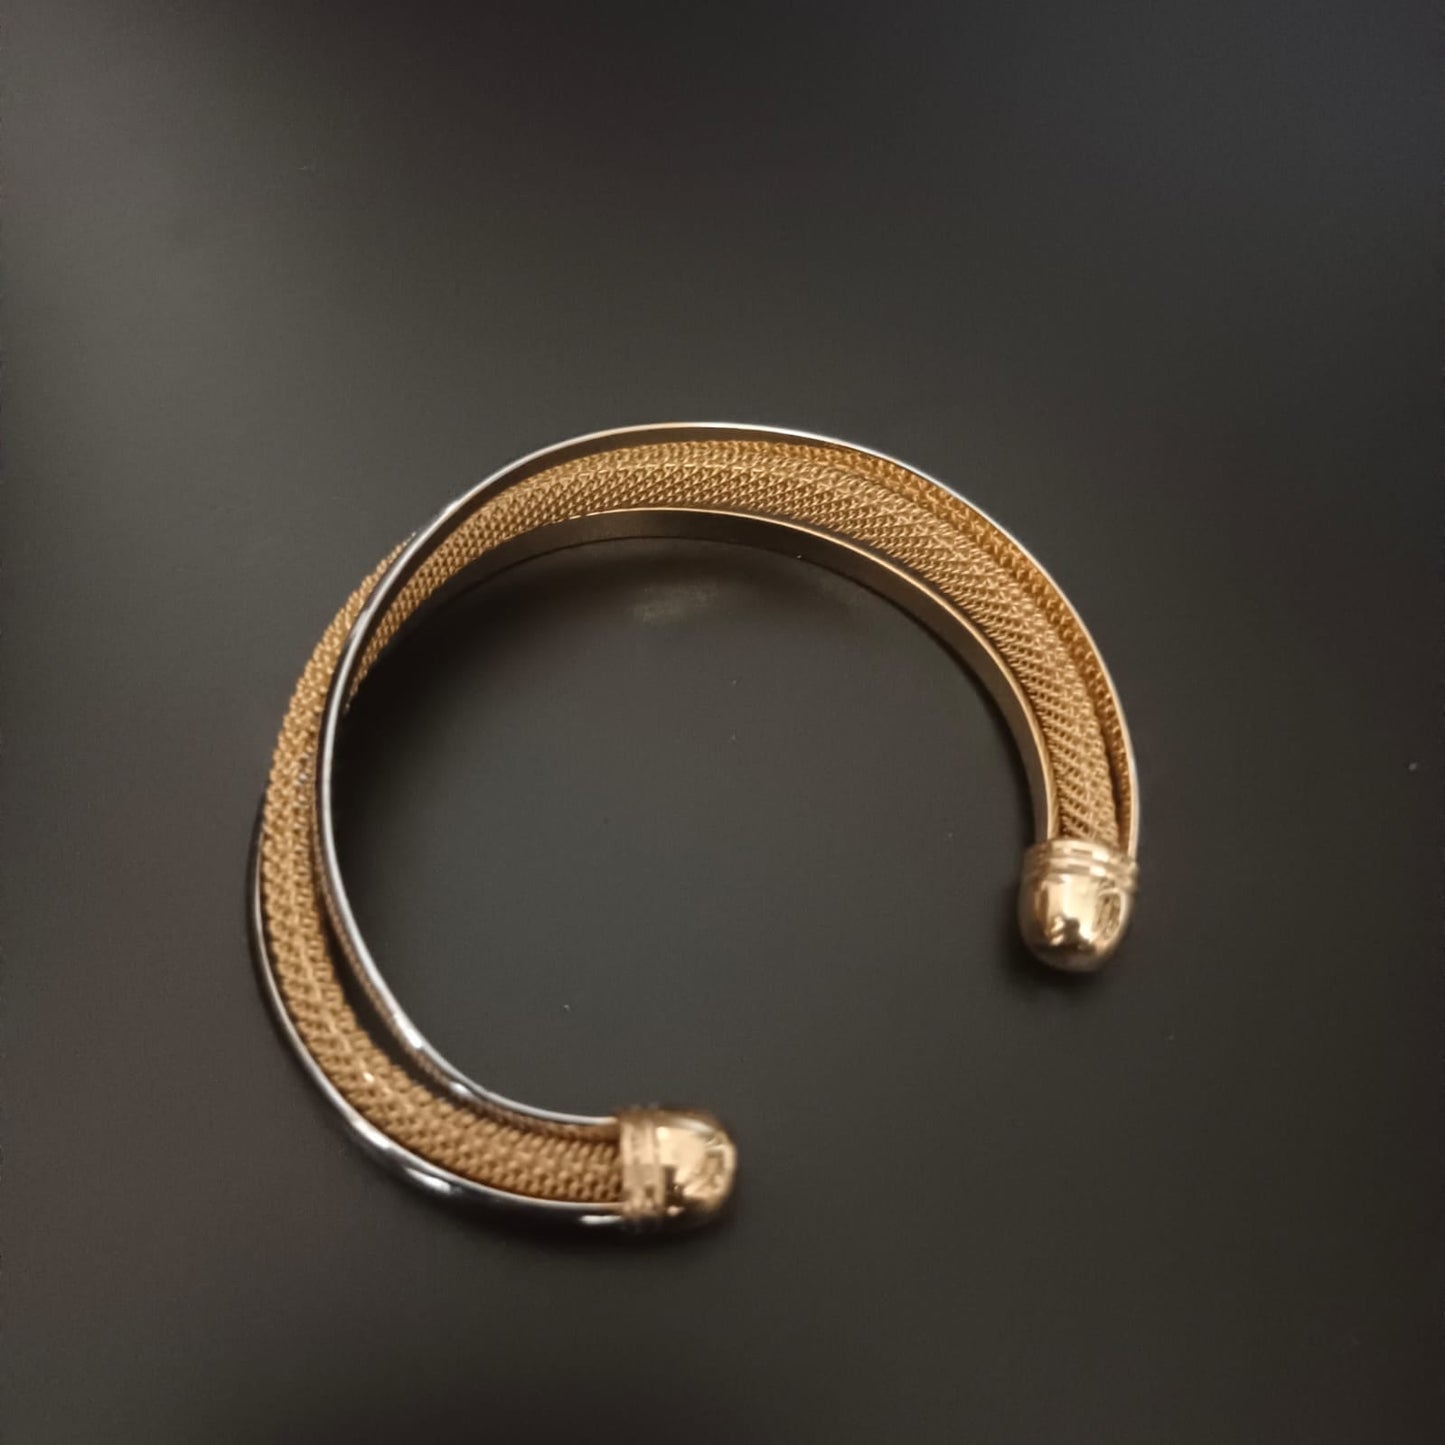 New Gold Silver Kada Bracelet For Men and Women